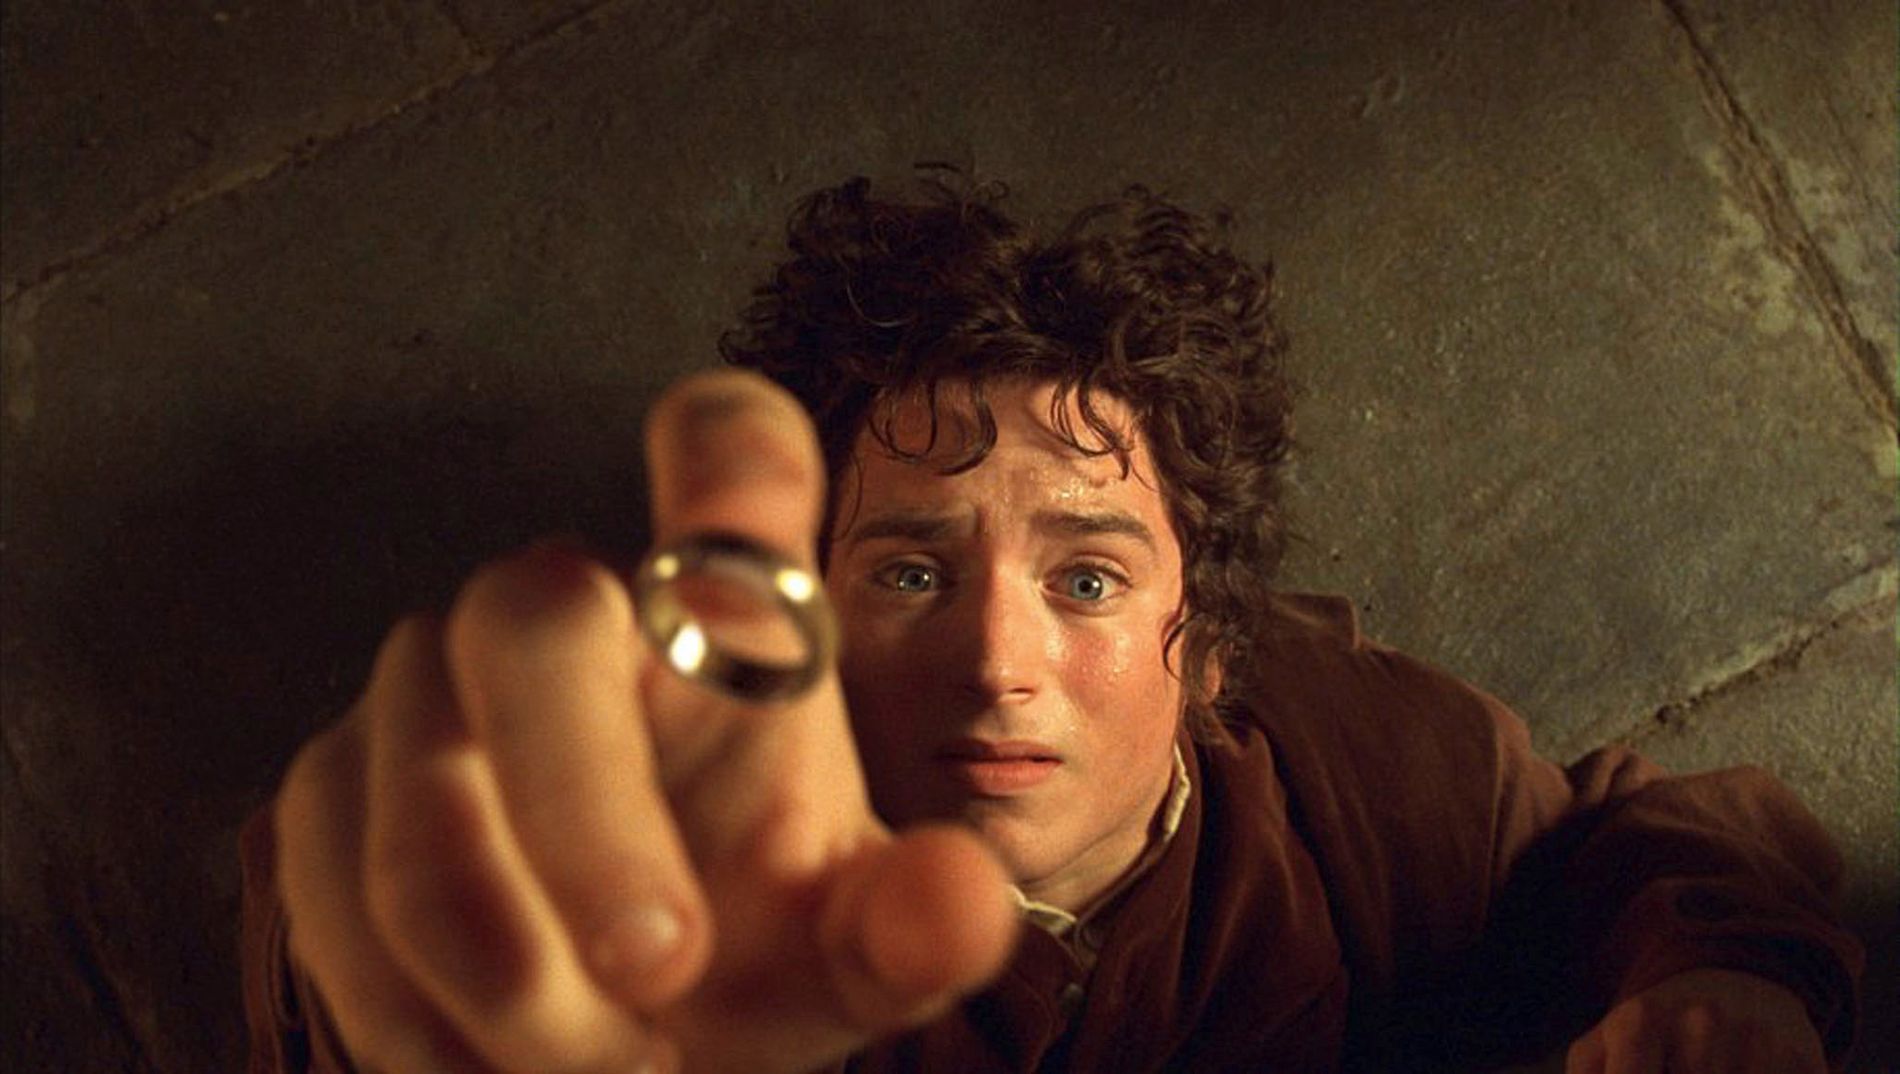 Elijah Wood spilte karakteren Frodo i Ringenes Herre-triologien som kom ut som film mellom 2001 og 2003. Nå skal den populære fantasyhistorien bli serie. 